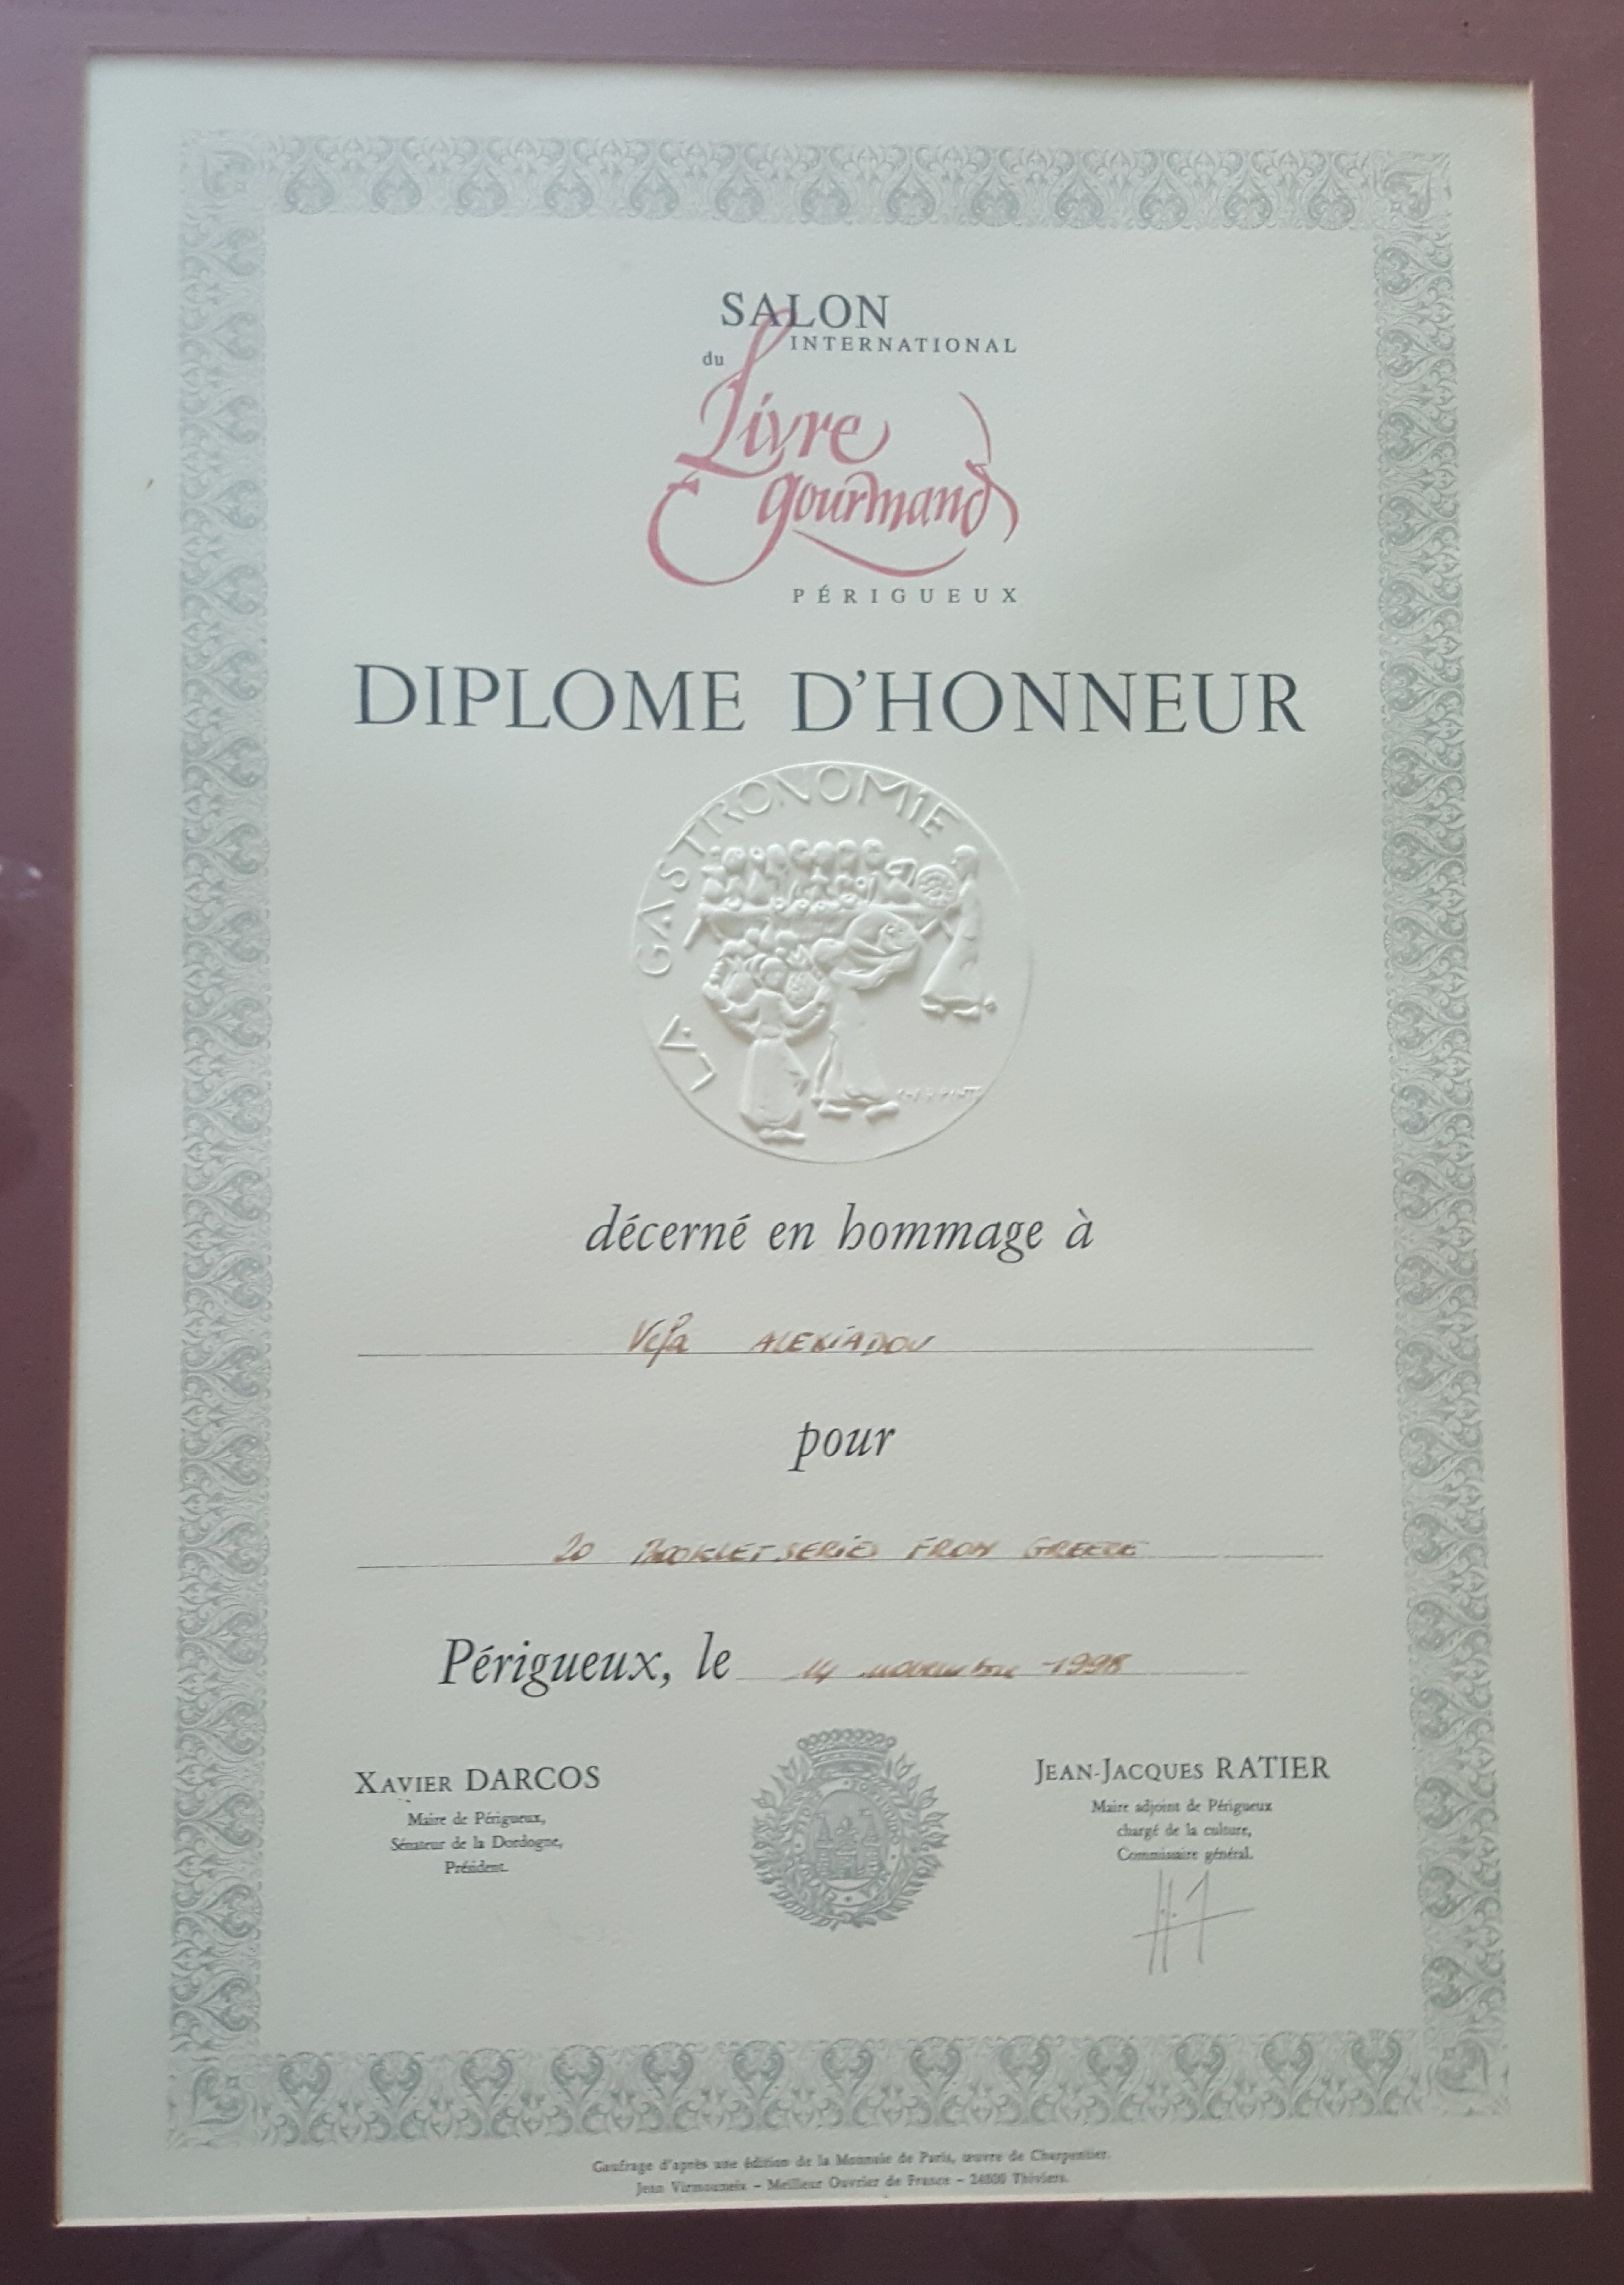 ΒΕΦΑ ΑΛΕΞΙΑΔΟΥ PERIGUEUX 1998 Gurmand Awards certificate vefaalexiadou cookbooks & blog vefaalexiadou.gr/